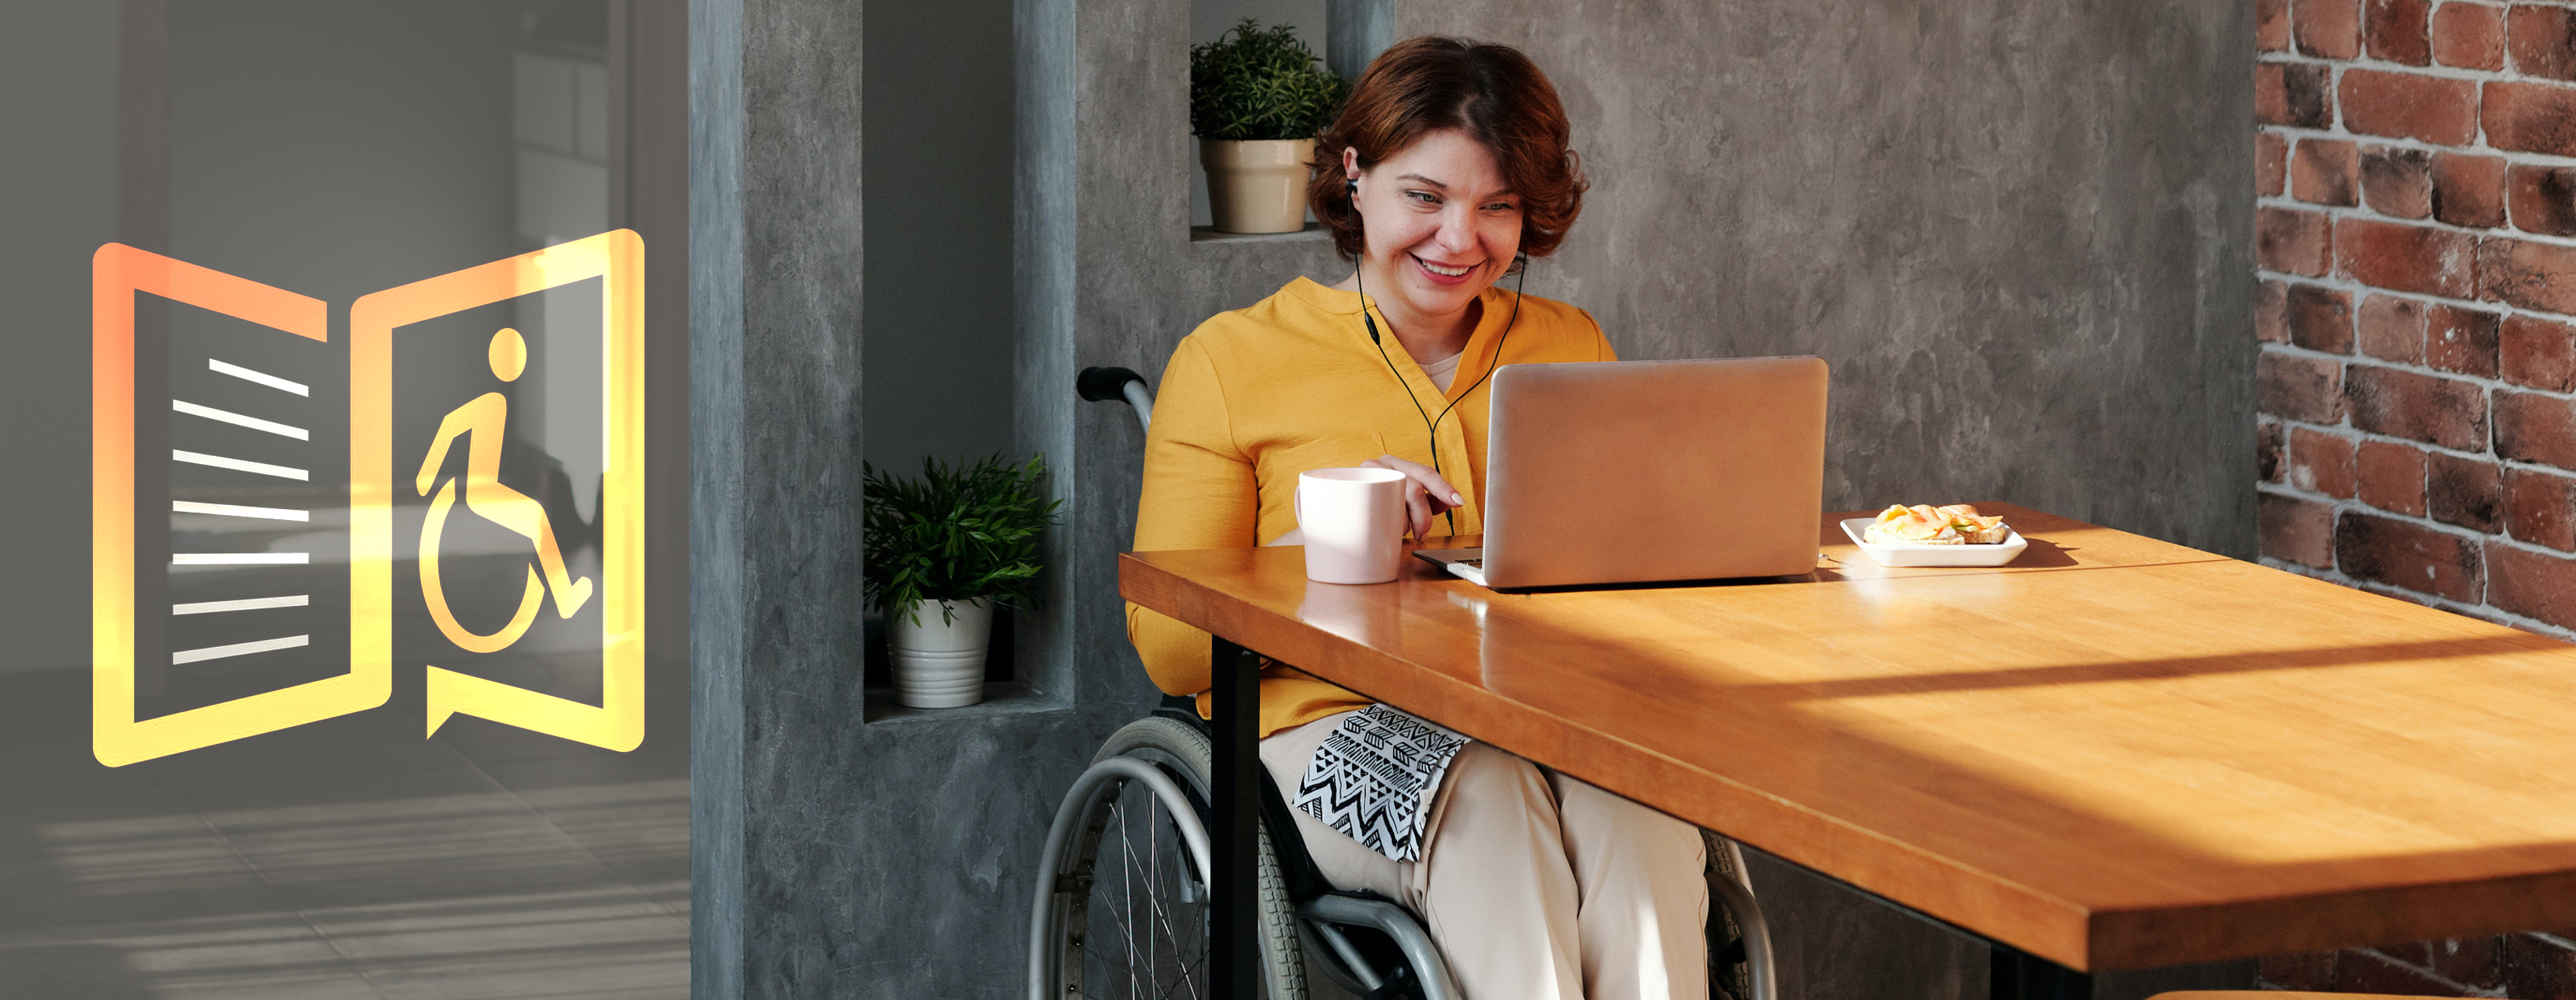 Beispielbild: Barrierefreiheit mit Symbolbild und einer freundlichen Frau im Rollstuhl im Home Office.